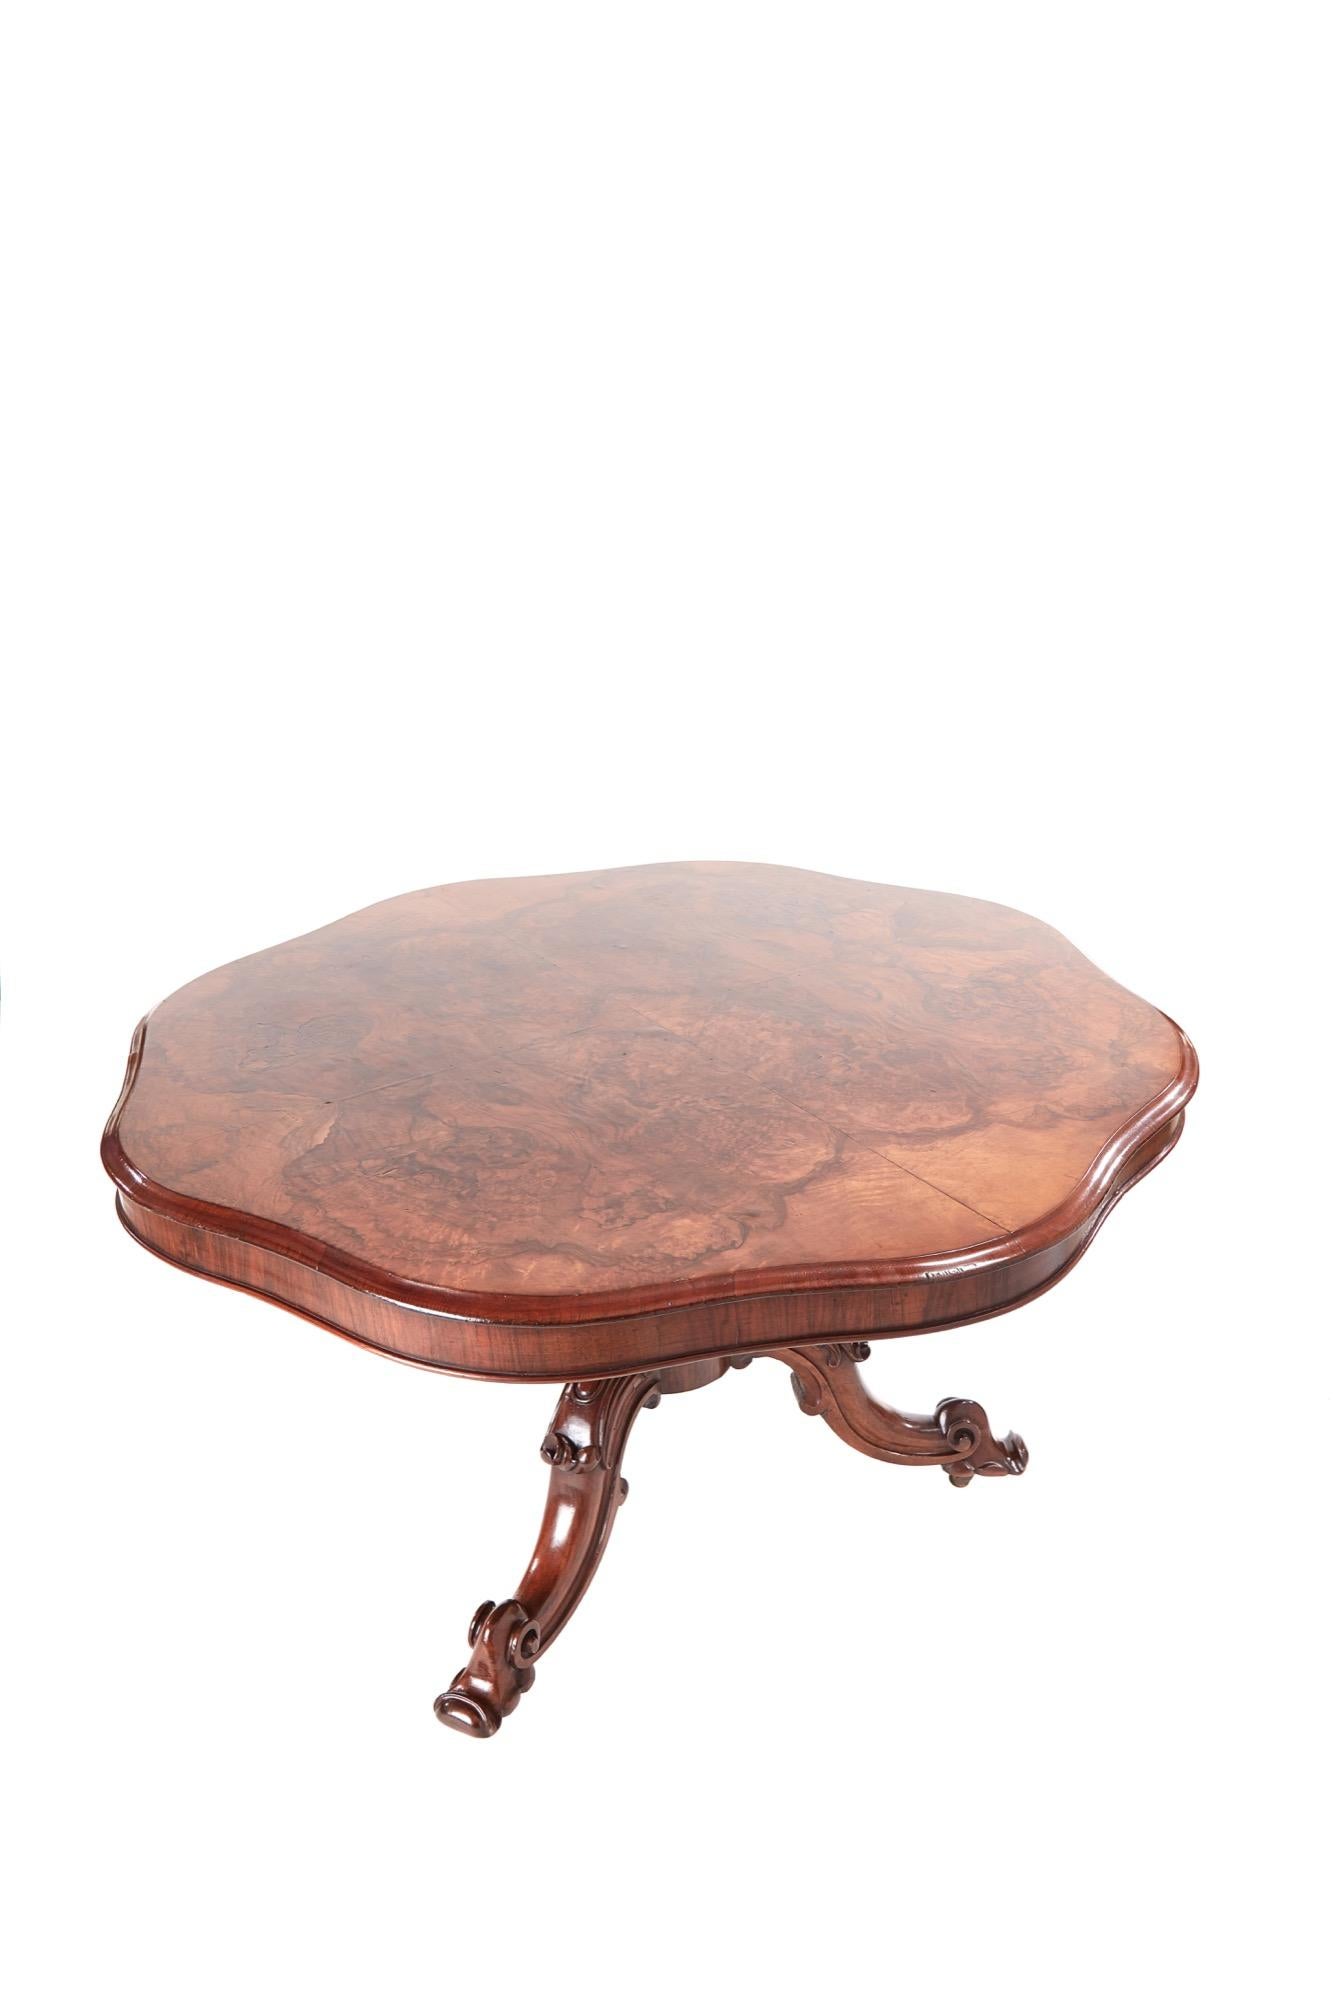 Antiker viktorianischer Nussbaum-Mitteltisch in feinster Qualität mit kippbarer Tischplatte und außergewöhnlichen, aufeinander abgestimmten Furnieren aus Nussbaumwurzelholz. Er hat einen mit dem Daumen geformten Rand und einen Sockel aus massivem